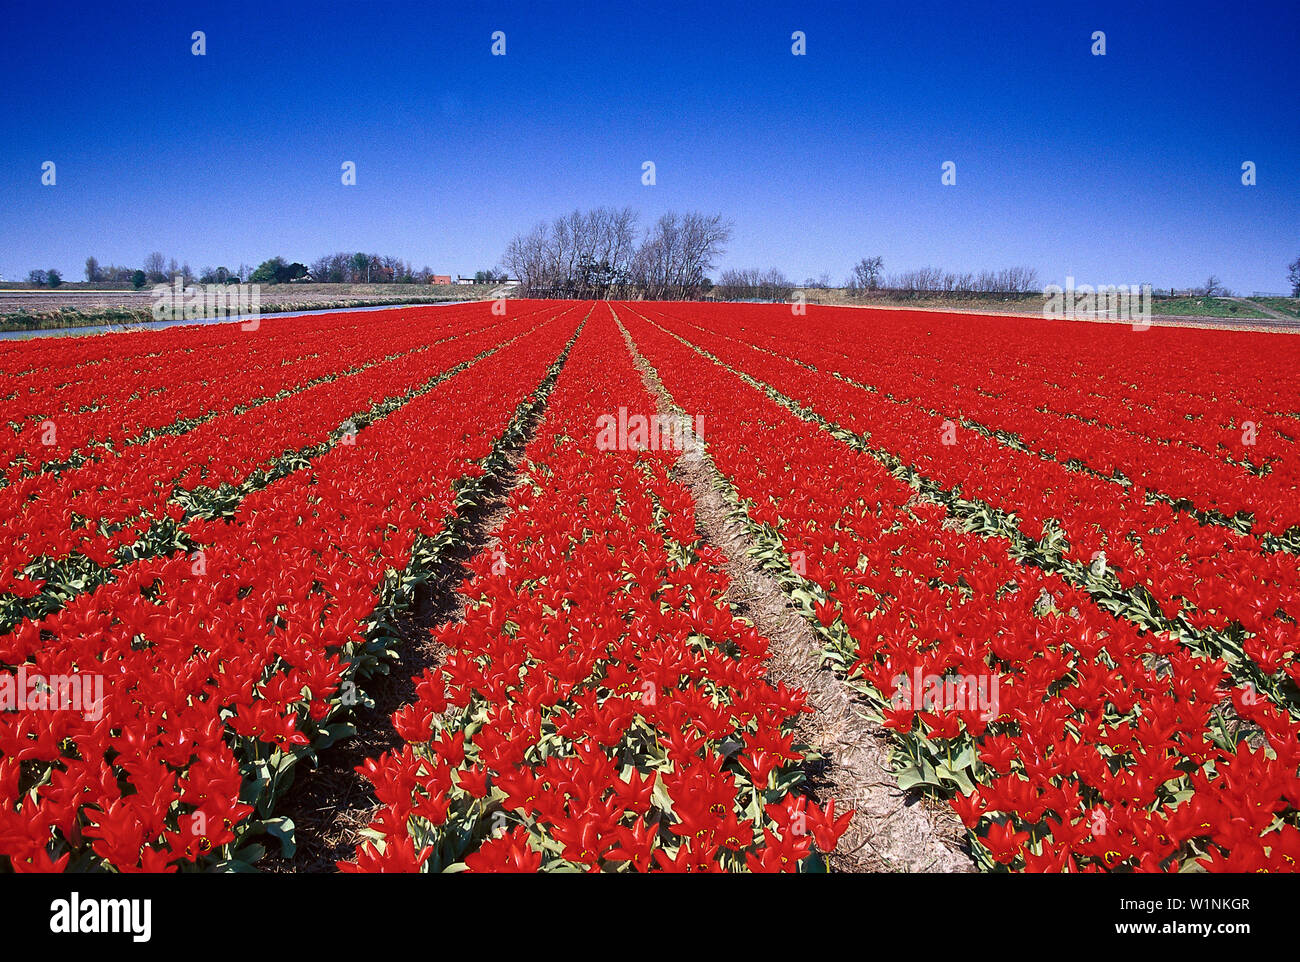 Tulipfield, De Zilk Netherlands Stock Photo